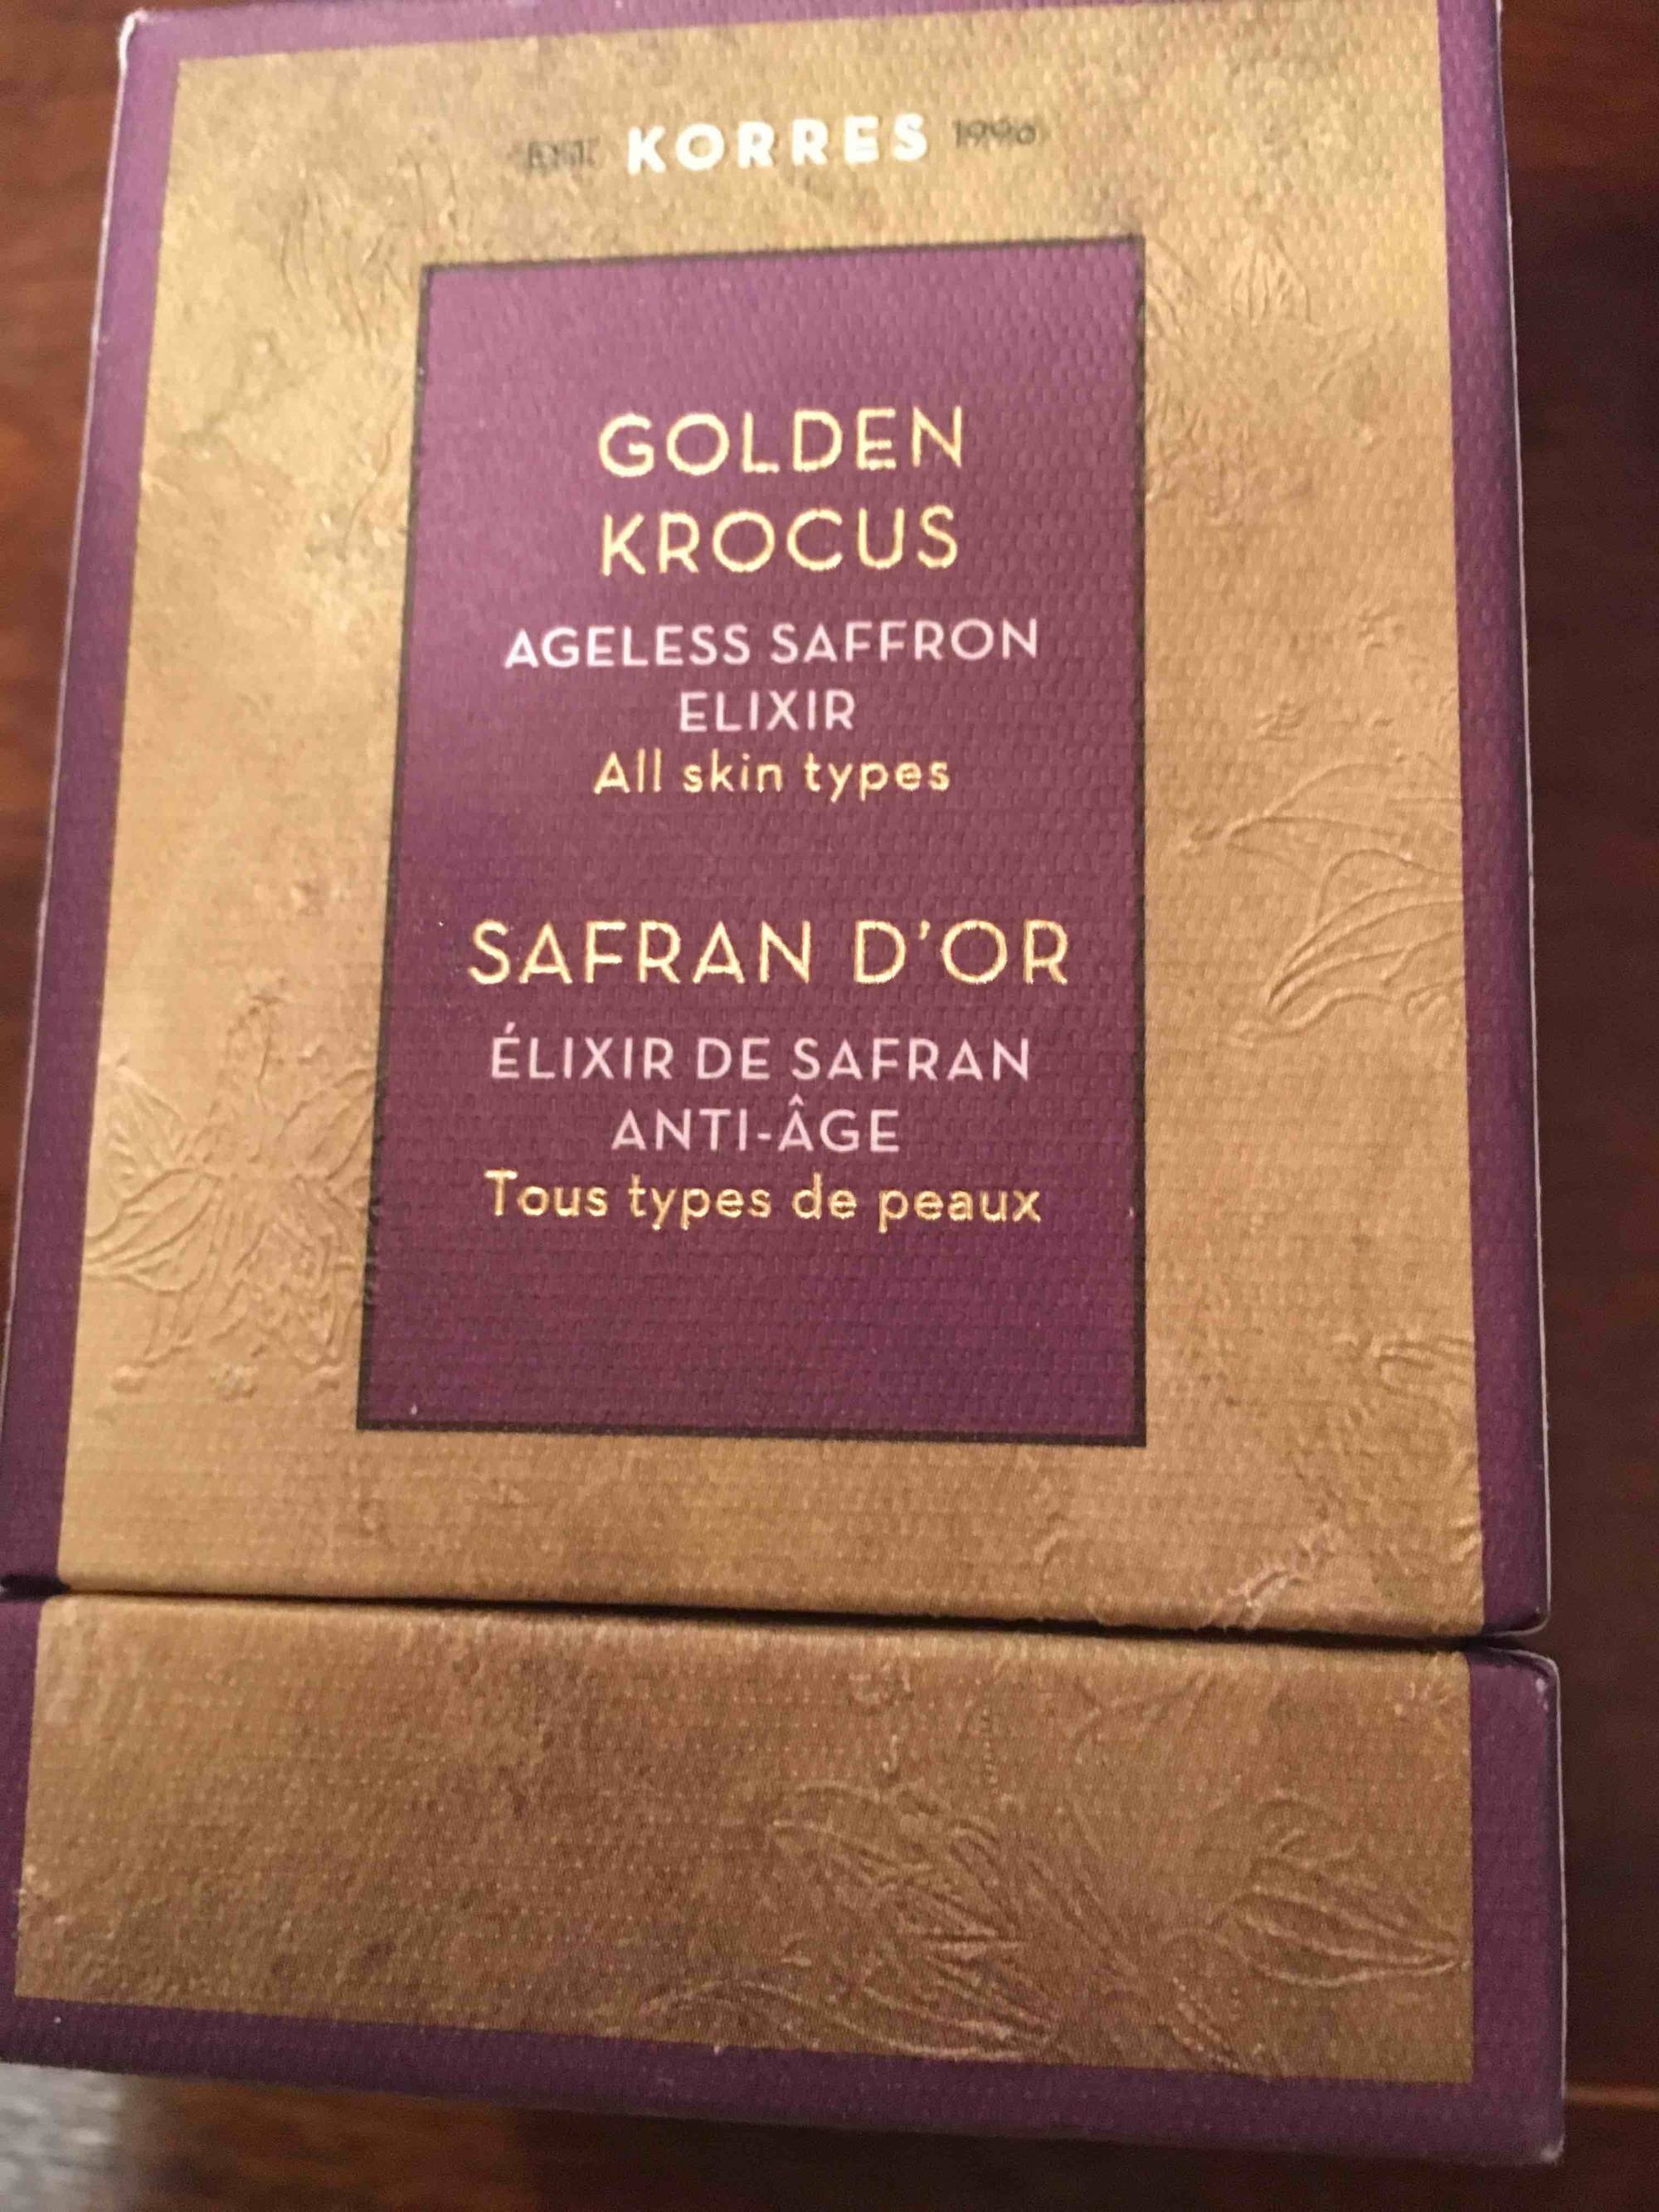 KORRES - Safran d'or - Elixir de safran anti-âge